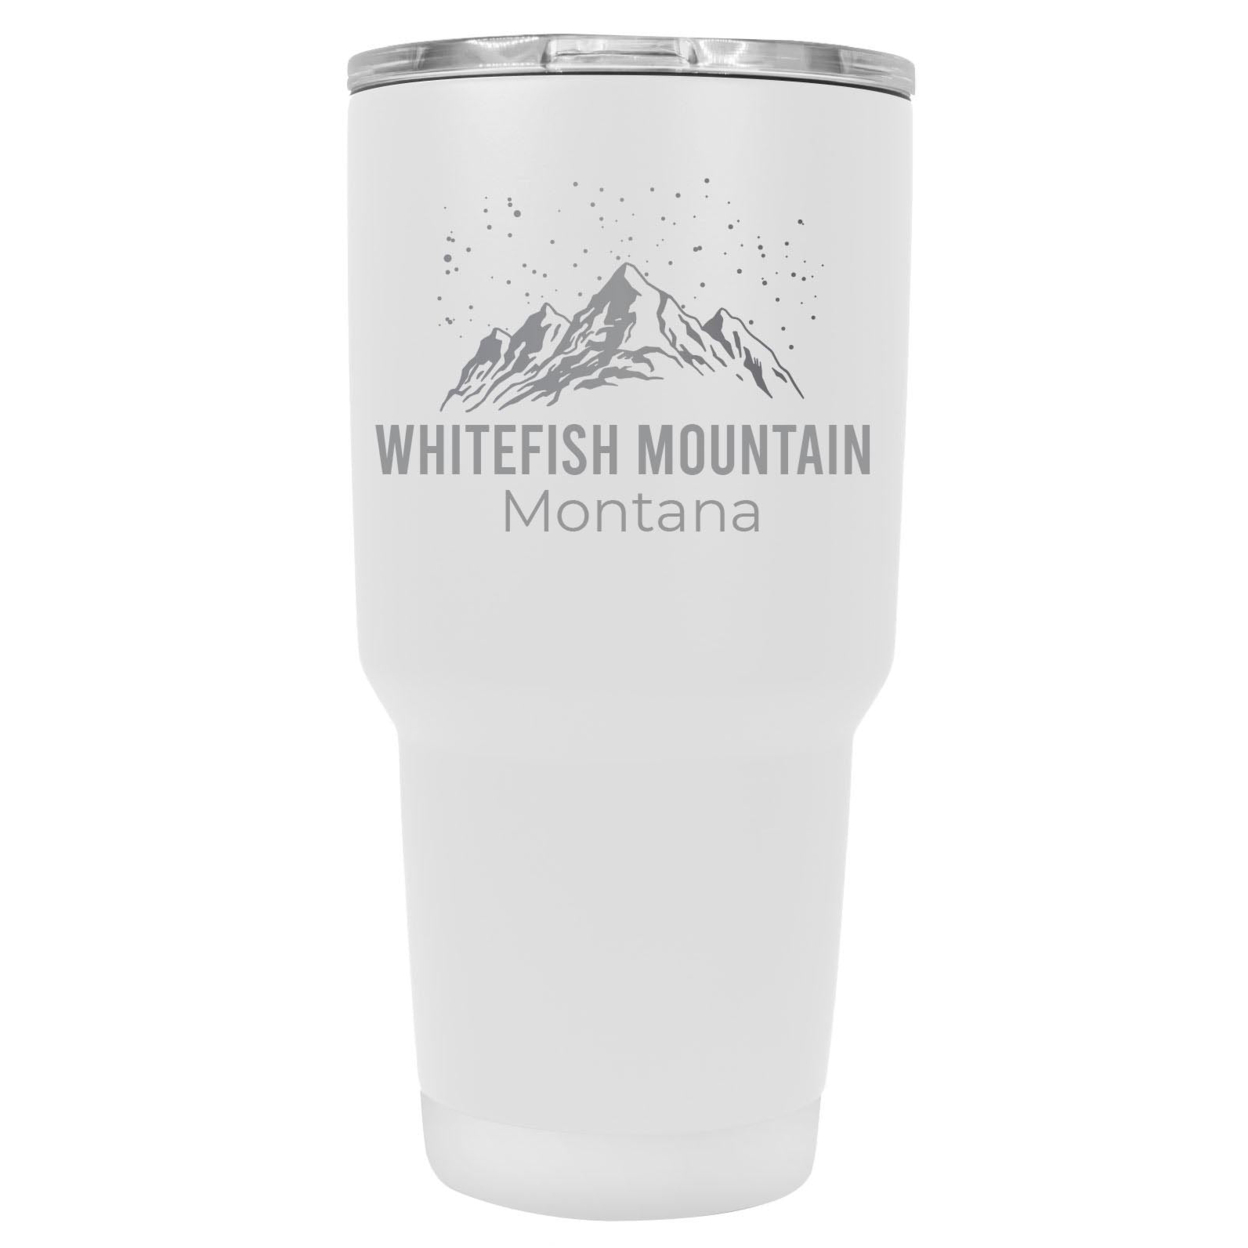 Whitefish Mountain Montana Ski Snowboard Winter Souvenir Laser Engraved 24 Oz Insulated Stainless Steel Tumbler - White